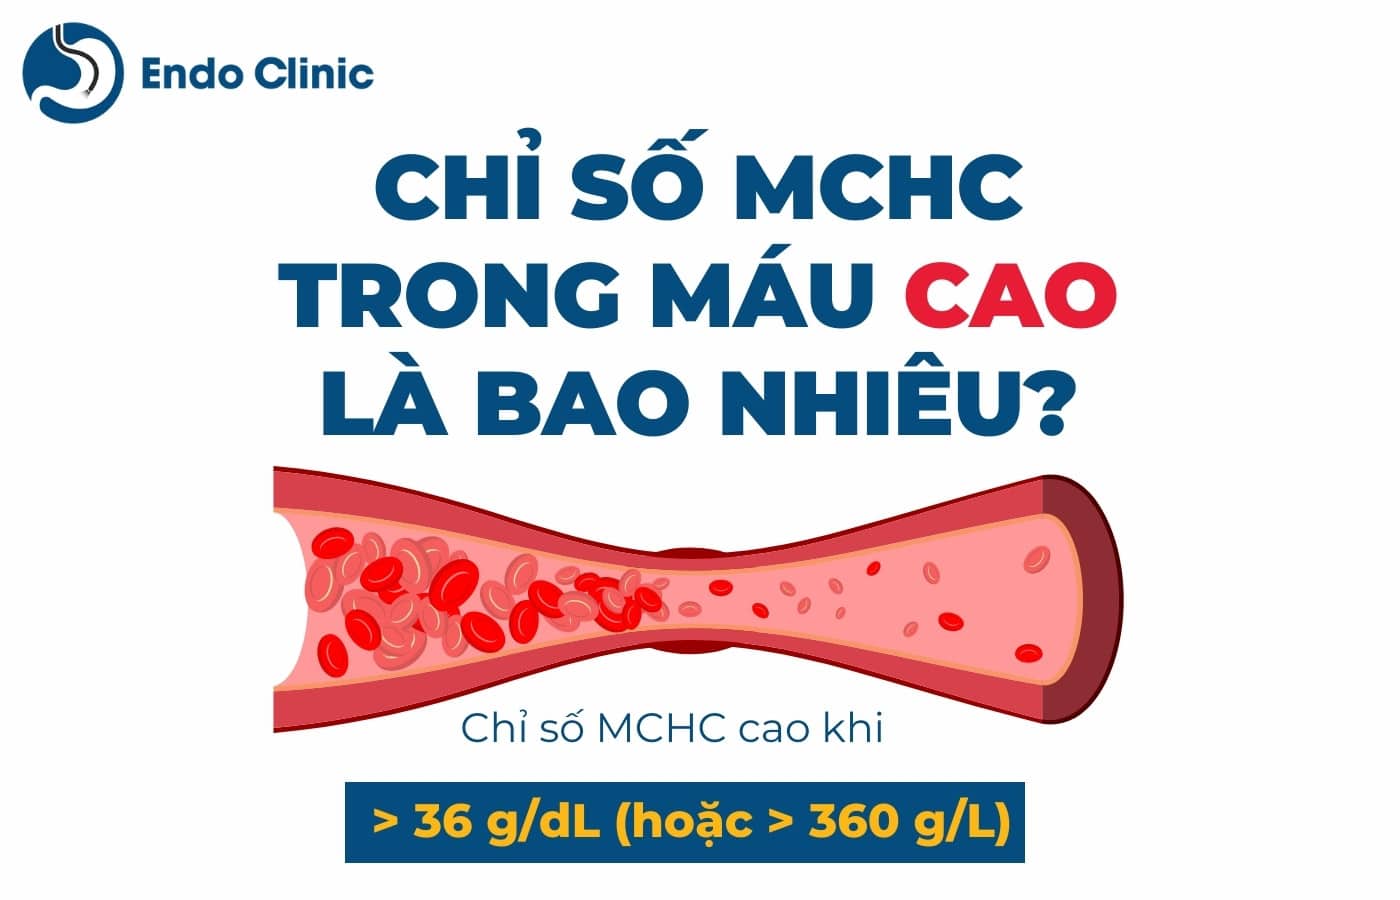 Chỉ số MCHC trong xét nghiệm máu tăng cao là bao nhiêu